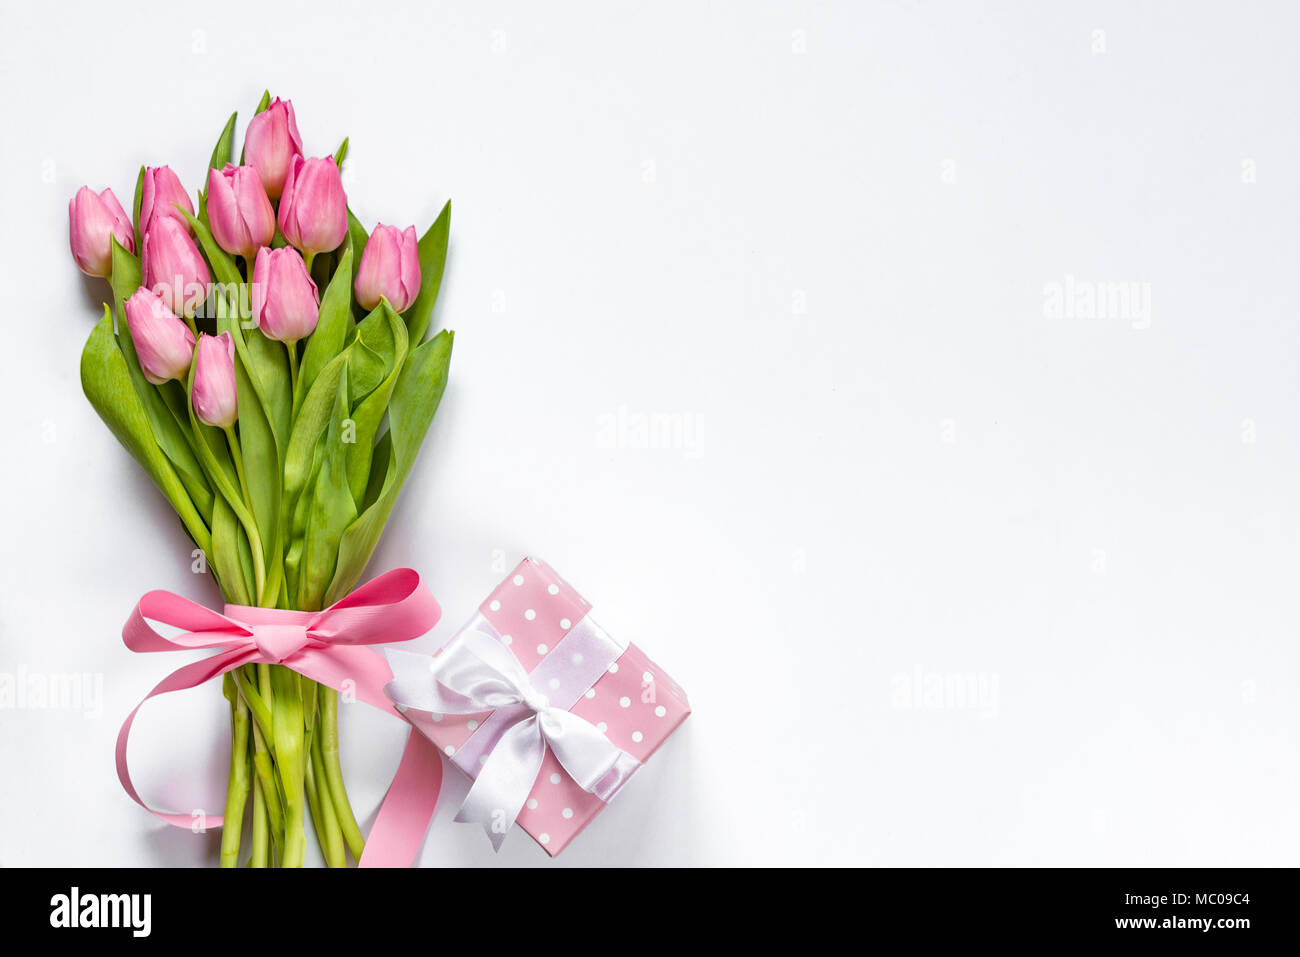 Vista superiore della rosa bouquet di tulipani, avvolti con il nastro rosa e rosa punteggiato confezione regalo su sfondo bianco. Copia dello spazio. Foto Stock